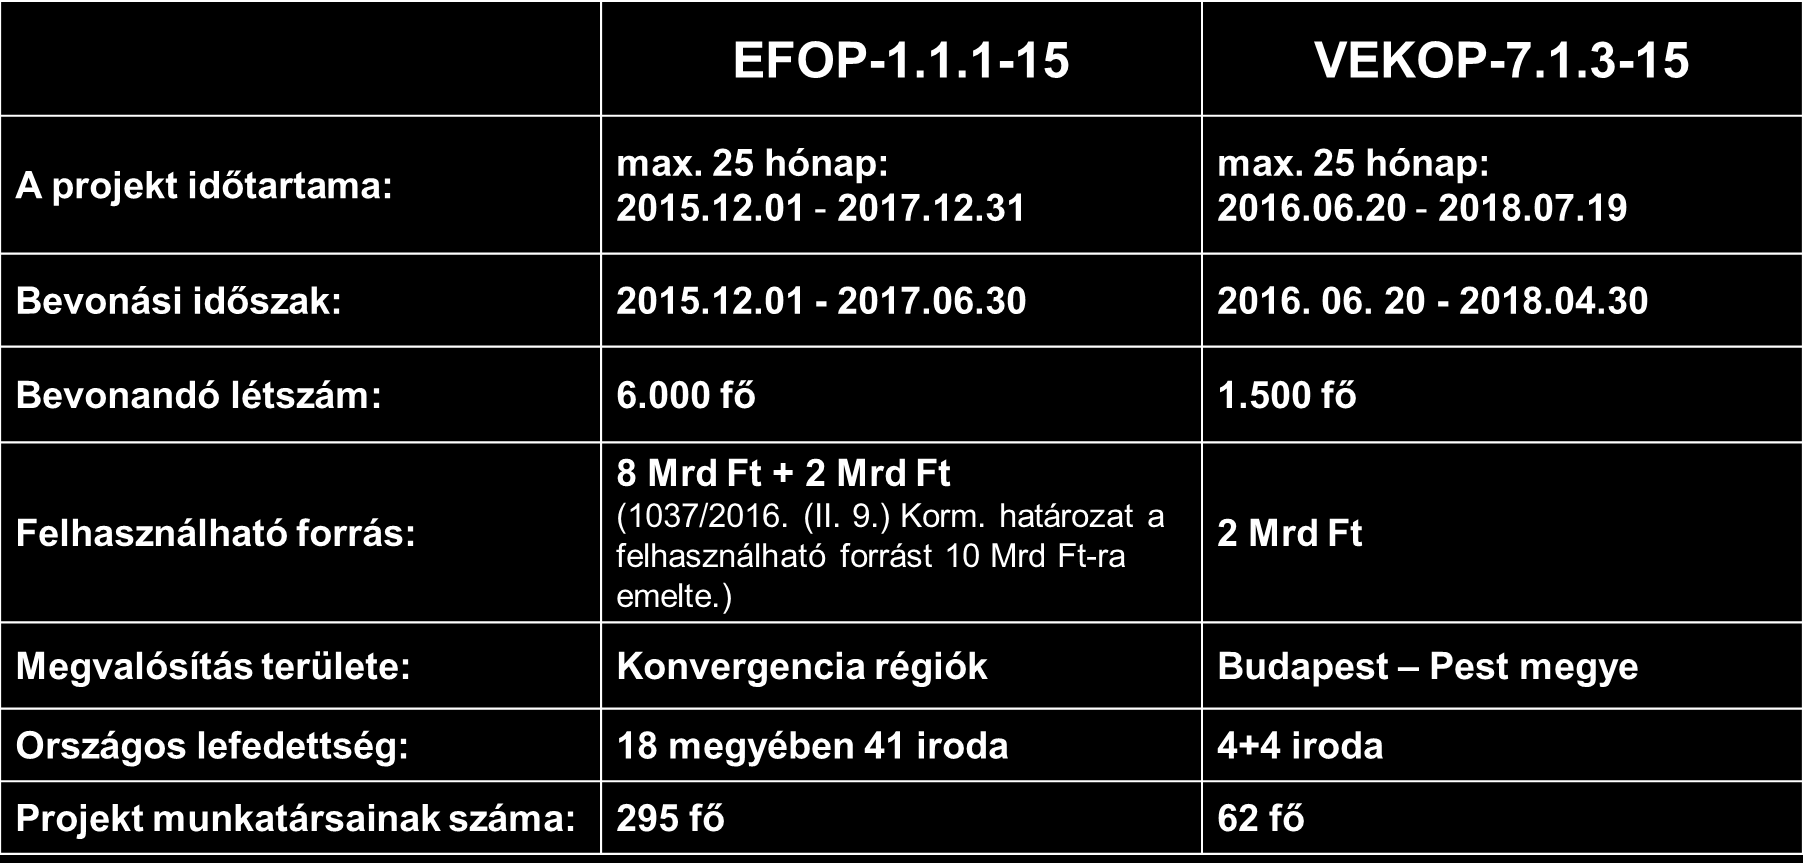 EFOP-1.